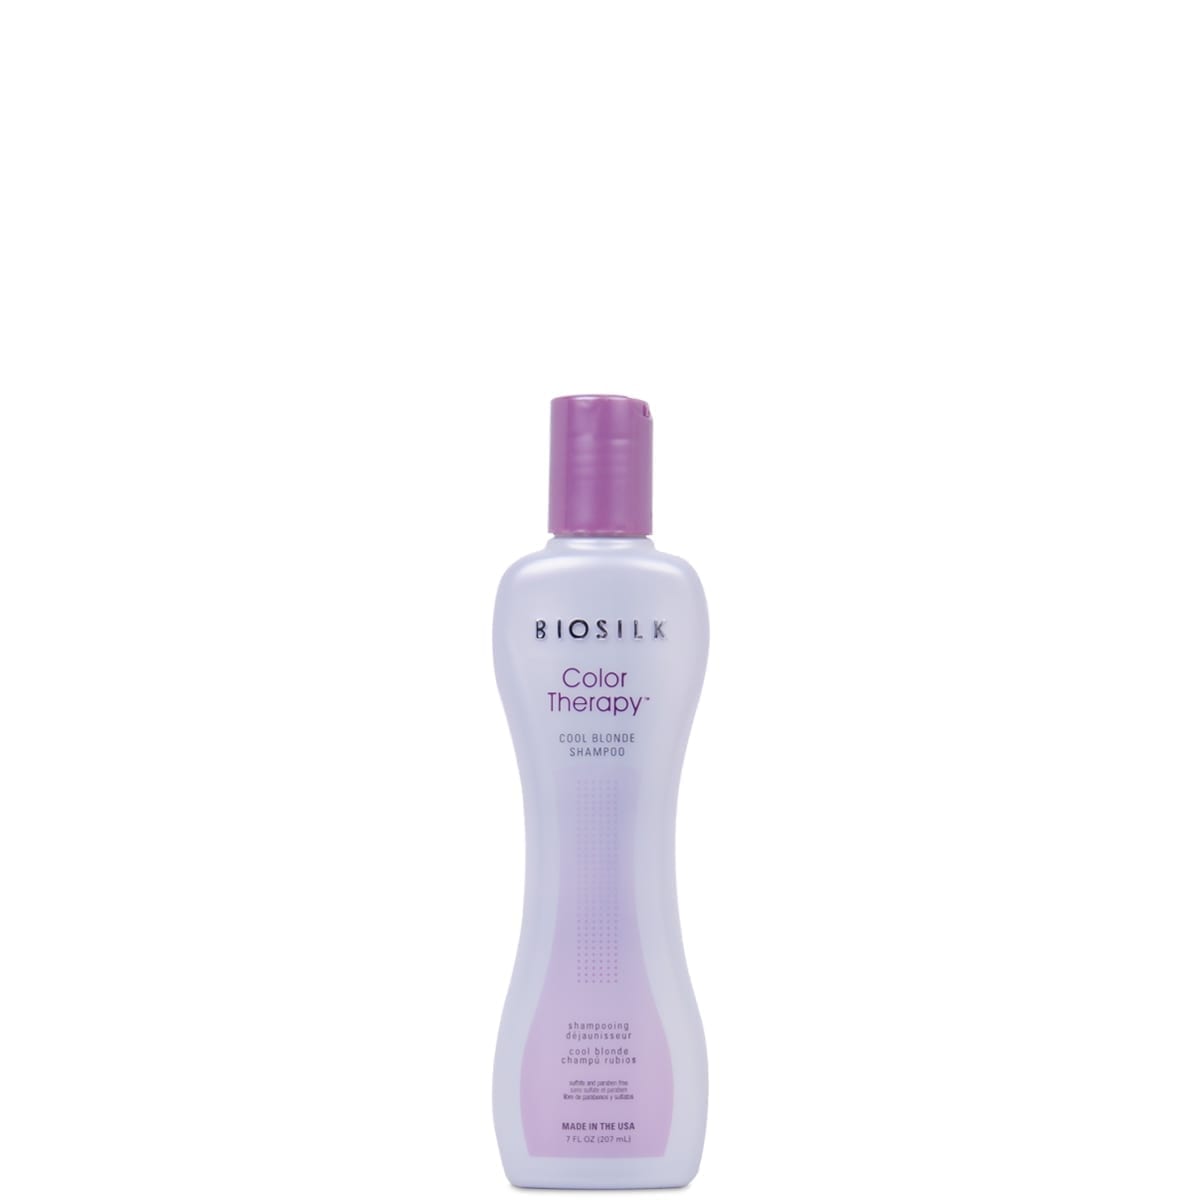 BioSilk | Color Therapy Cool Blonde Shampoo | 15ml